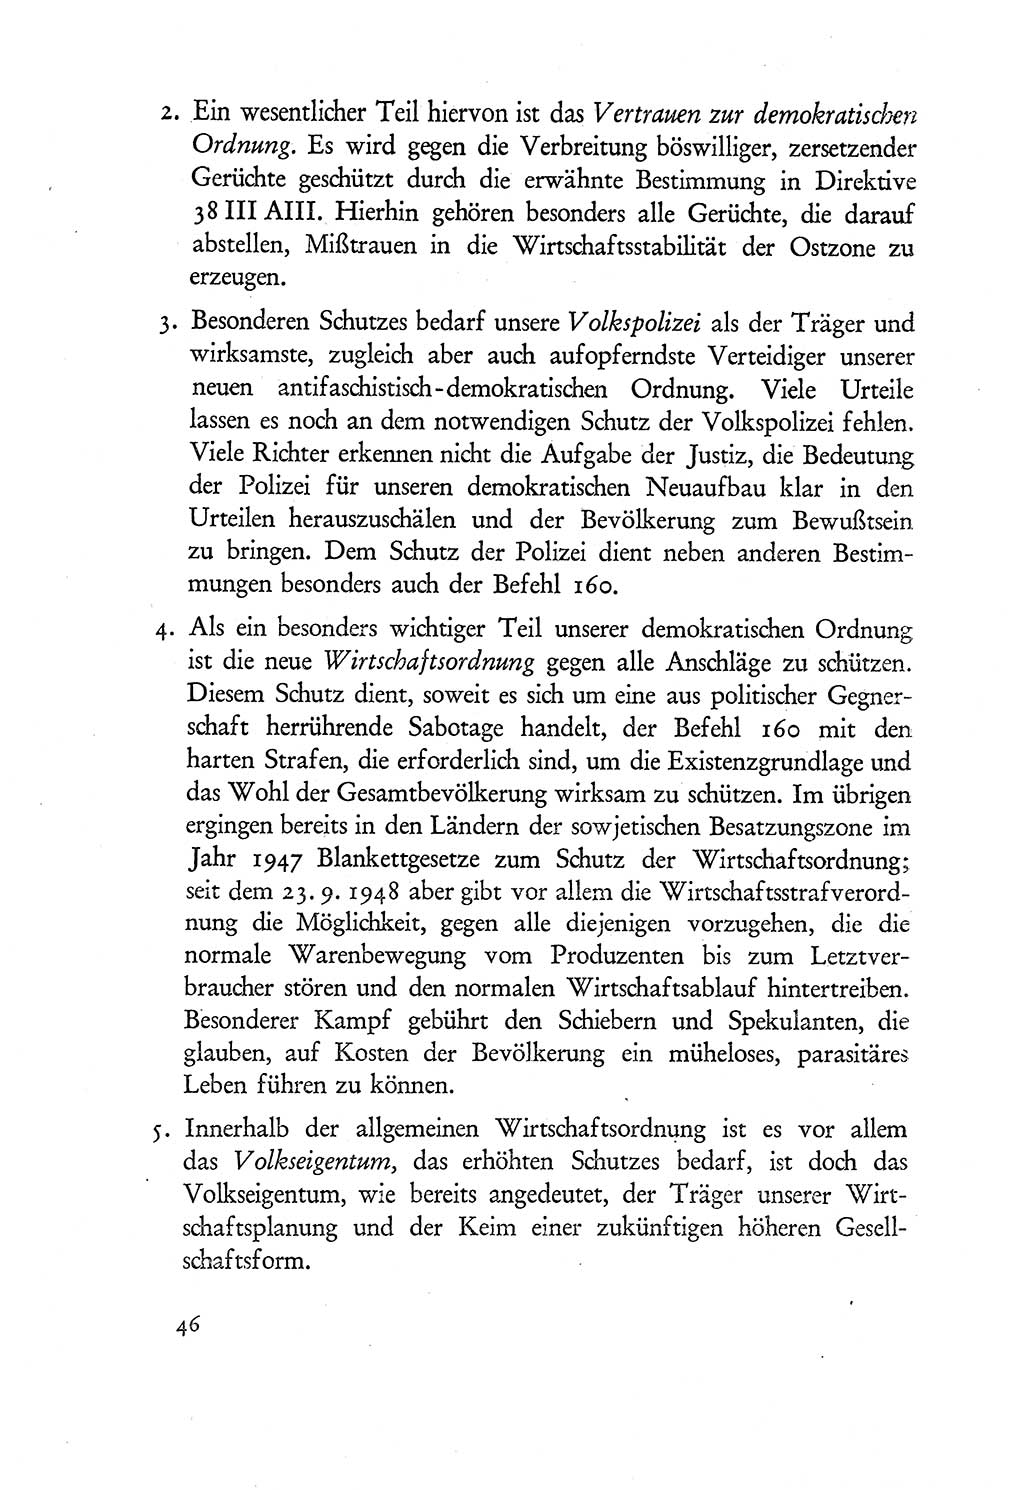 Probleme eines demokratischen Strafrechts [Sowjetische Besatzungszone (SBZ) Deutschlands] 1949, Seite 46 (Probl. Strafr. SBZ Dtl. 1949, S. 46)